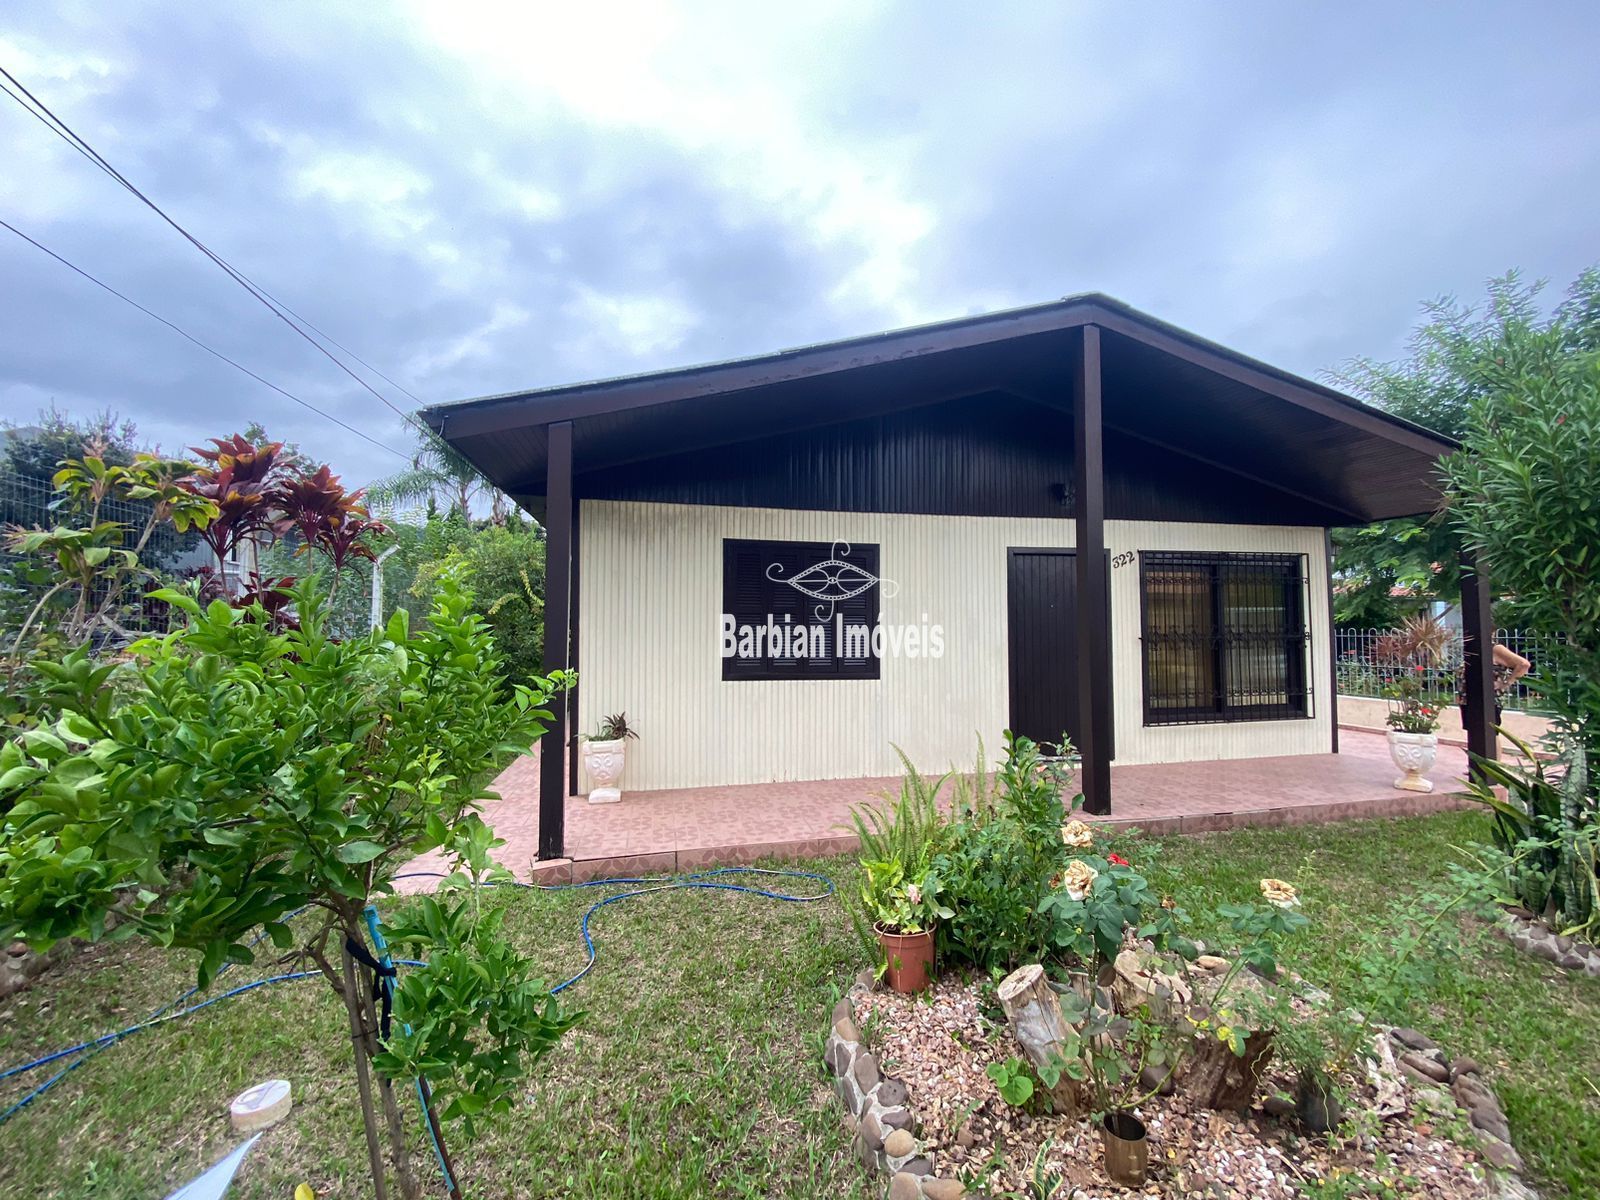 Casa  venda  no Margarida - Santa Cruz do Sul, RS. Imveis